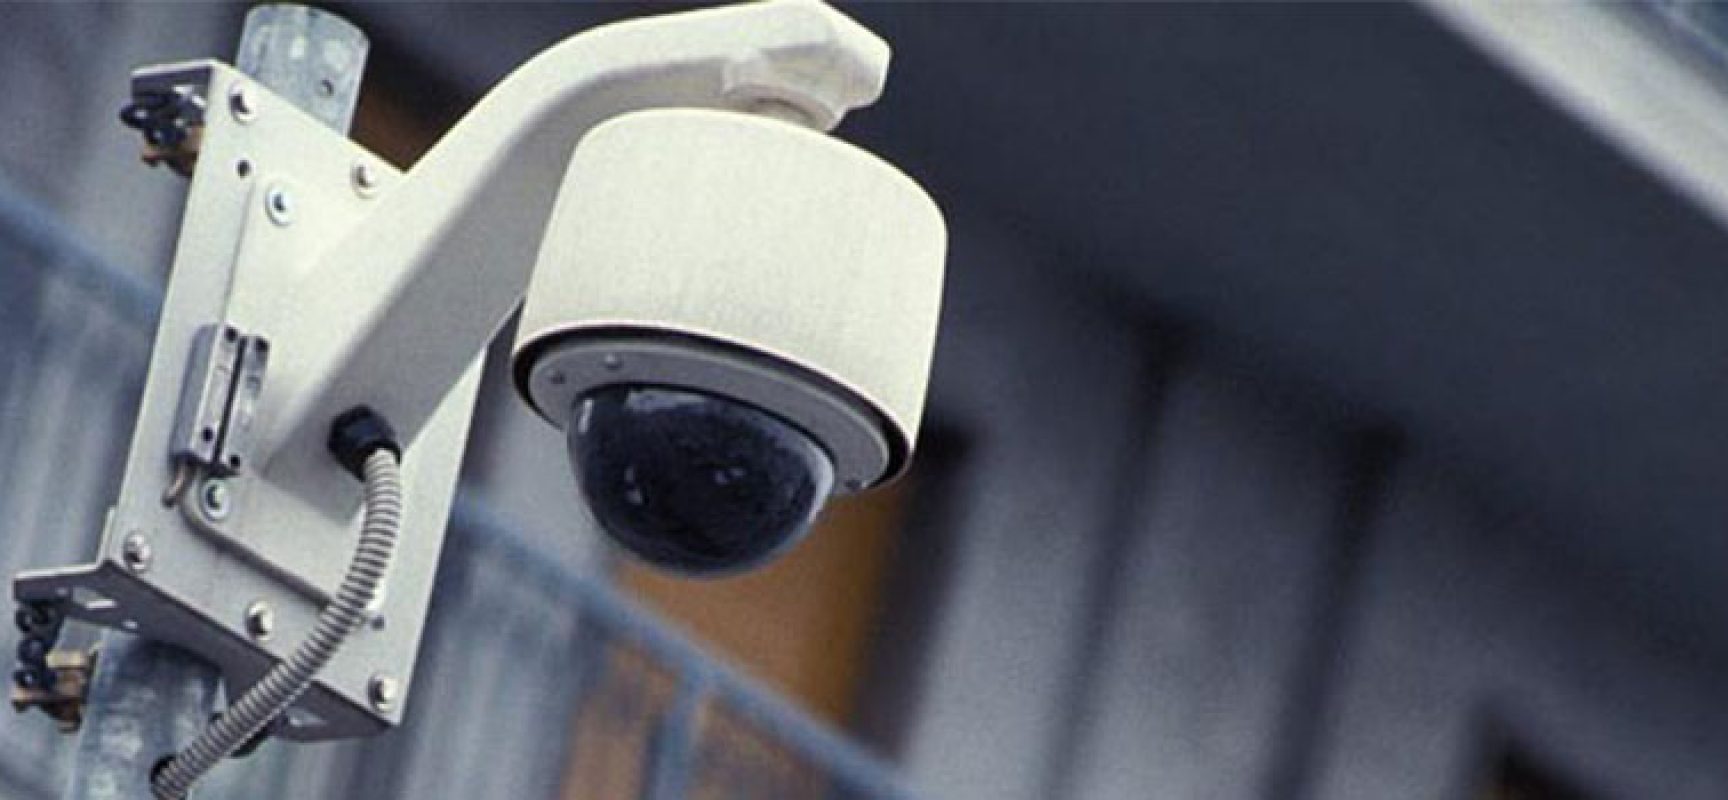 Sicurezza: 36 nuove telecamere di videosorveglianza, anche al Dolmen della Chianca